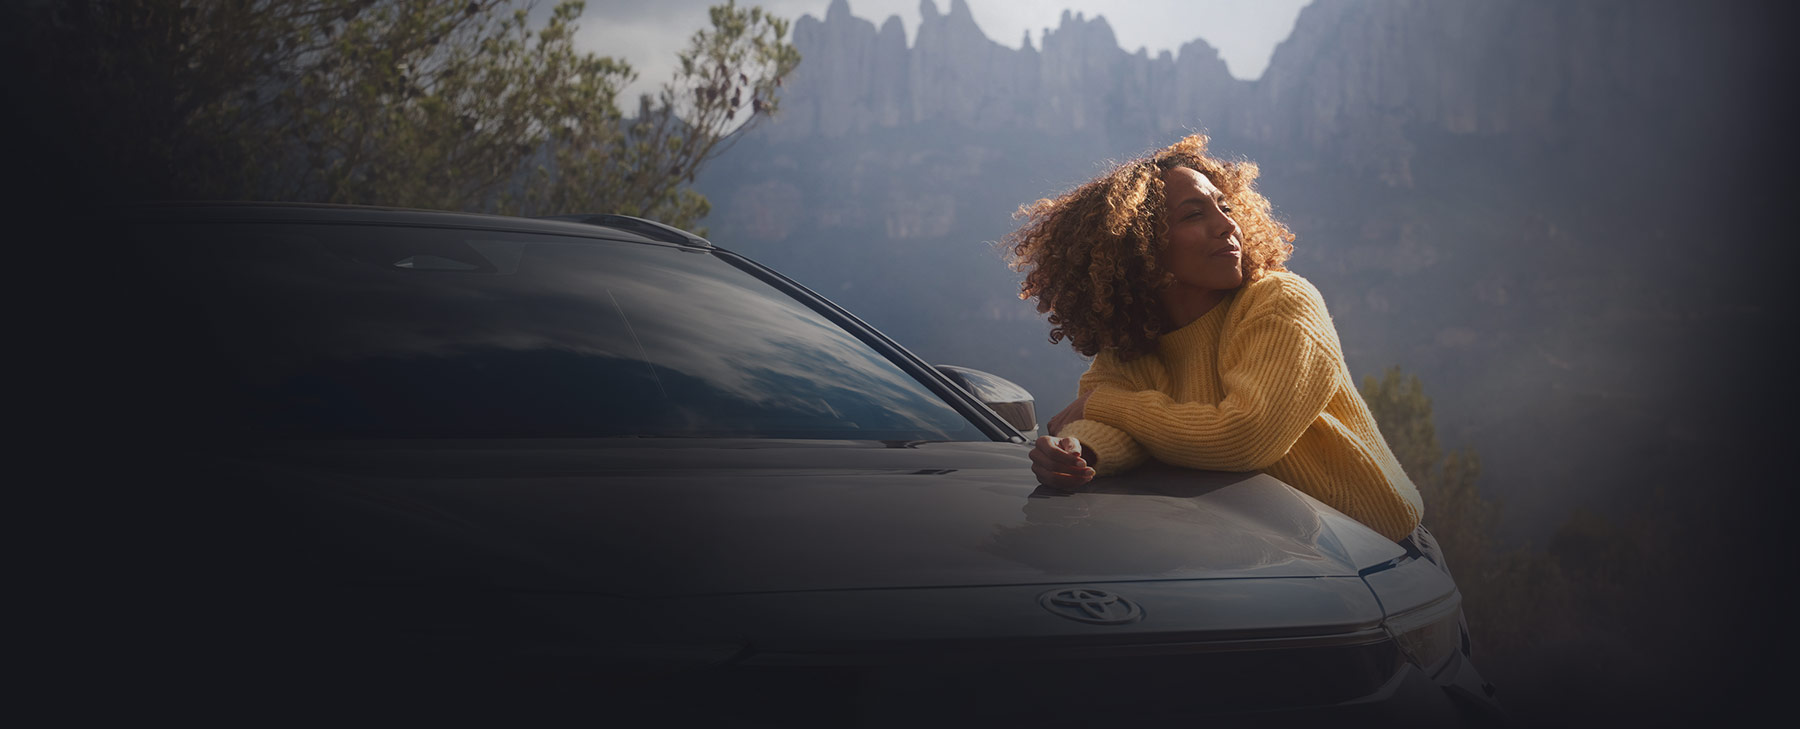 Frau mit lockigen Haaren stützt sich auf einem Toyota-Modell ab